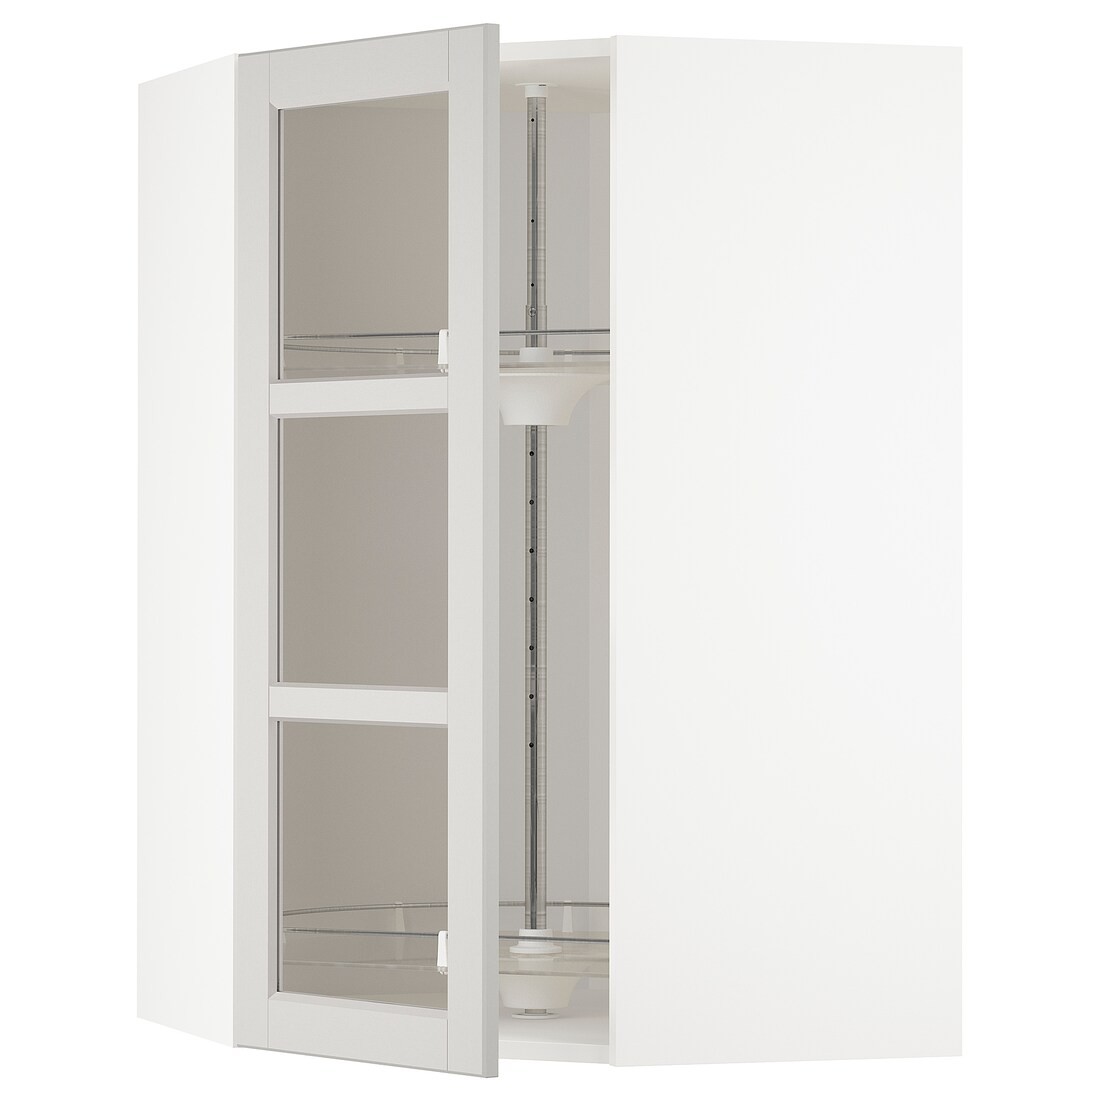 METOD МЕТОД Угловой настенный шкаф с каруселью / стеклянная дверь, белый / Lerhyttan светло-серый, 68x100 см